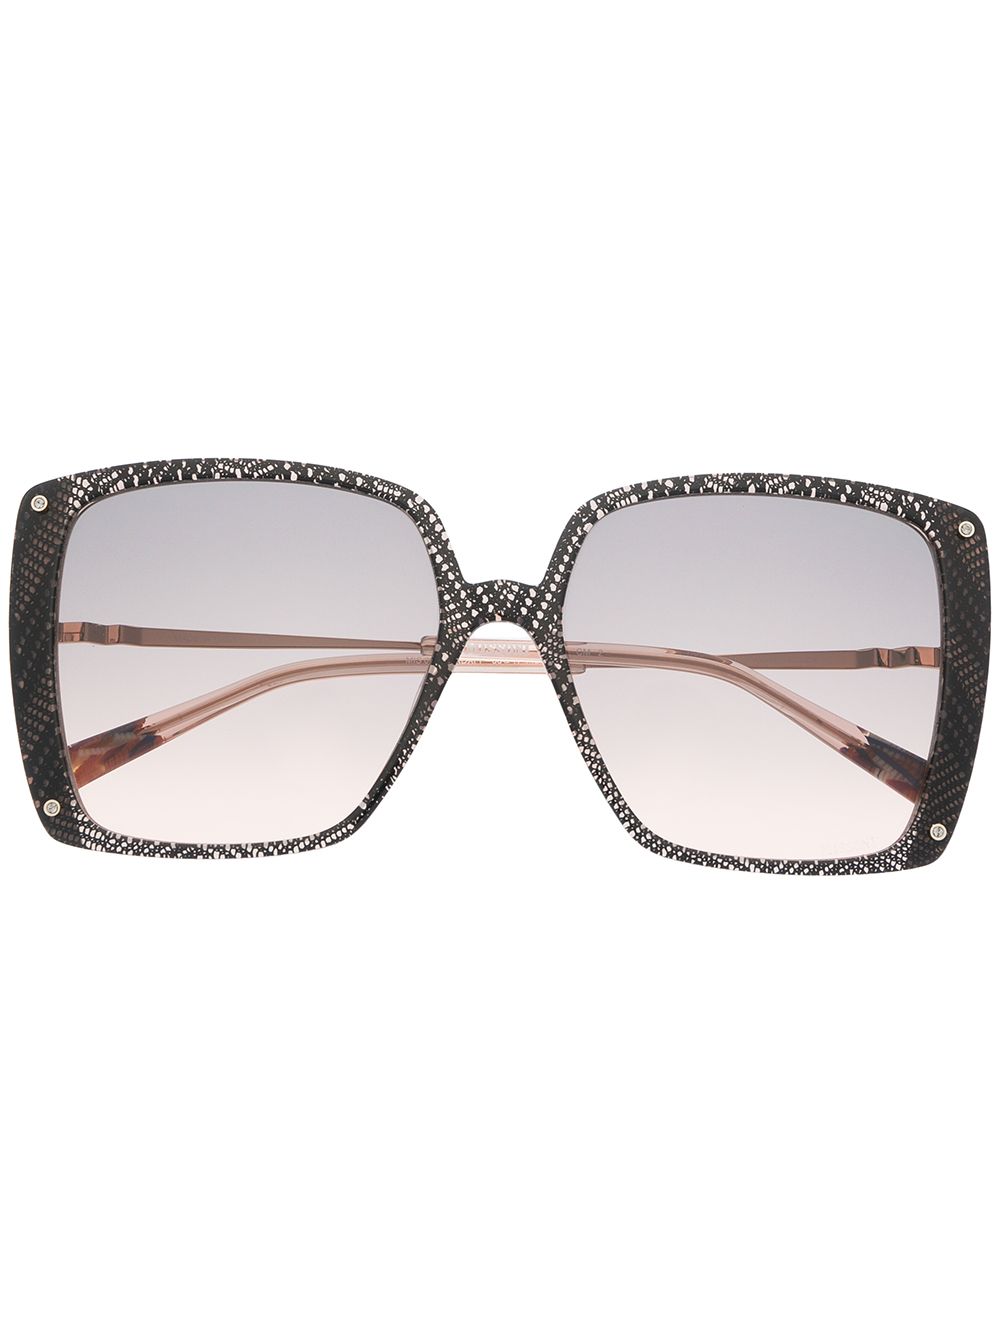 фото Missoni eyewear солнцезащитные очки в массивной квадратной оправе